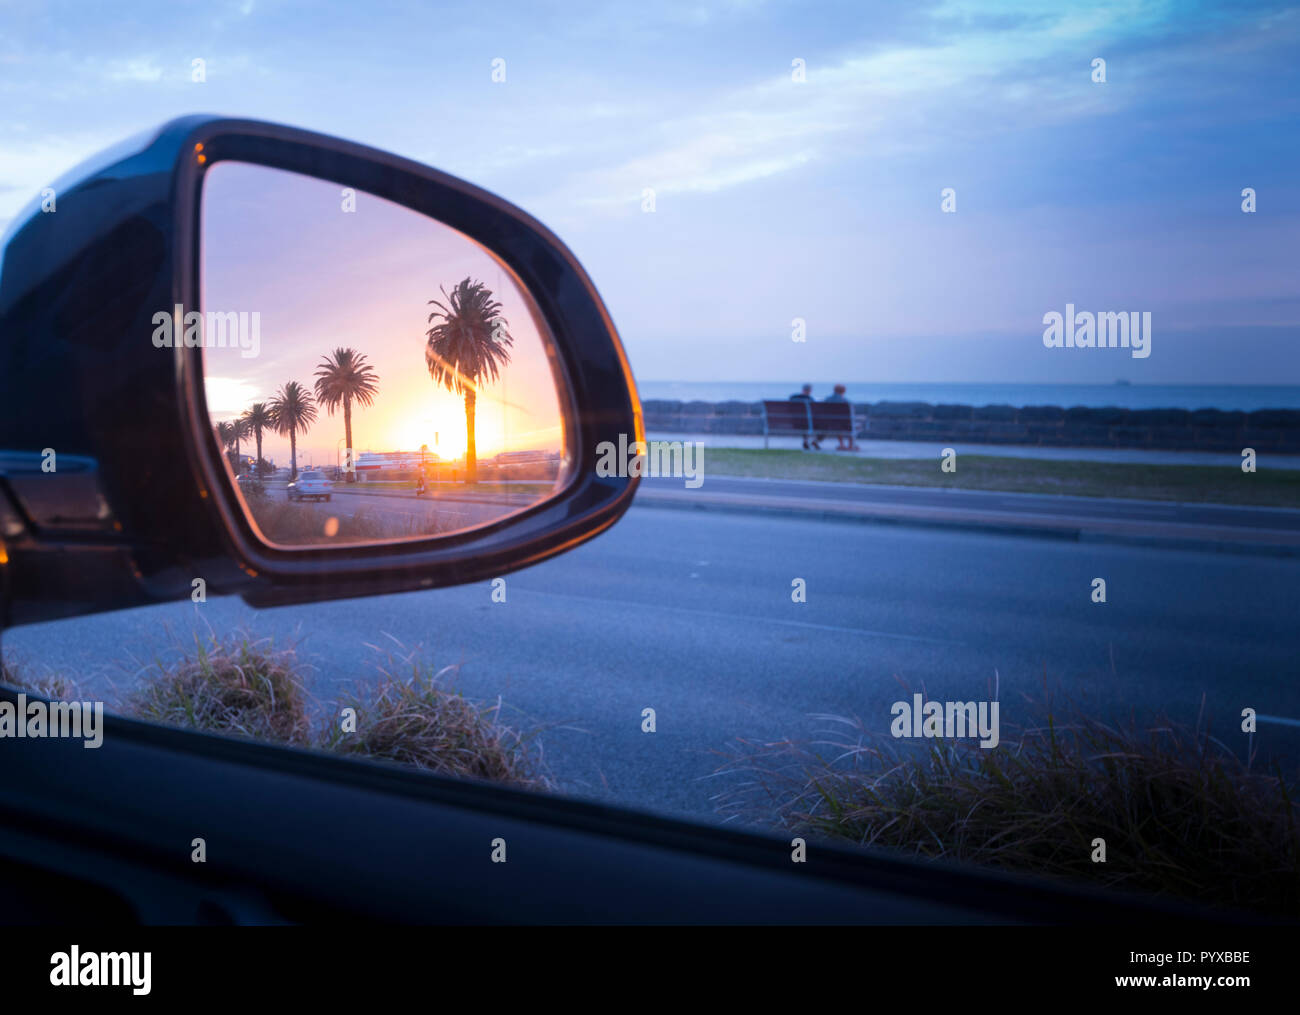 Paar beim Sunset Beach Szene, die gesehen werden können im Rückspiegel des Autos reflektiert werden, Port Melbourne, Victoria, Australien Stockfoto